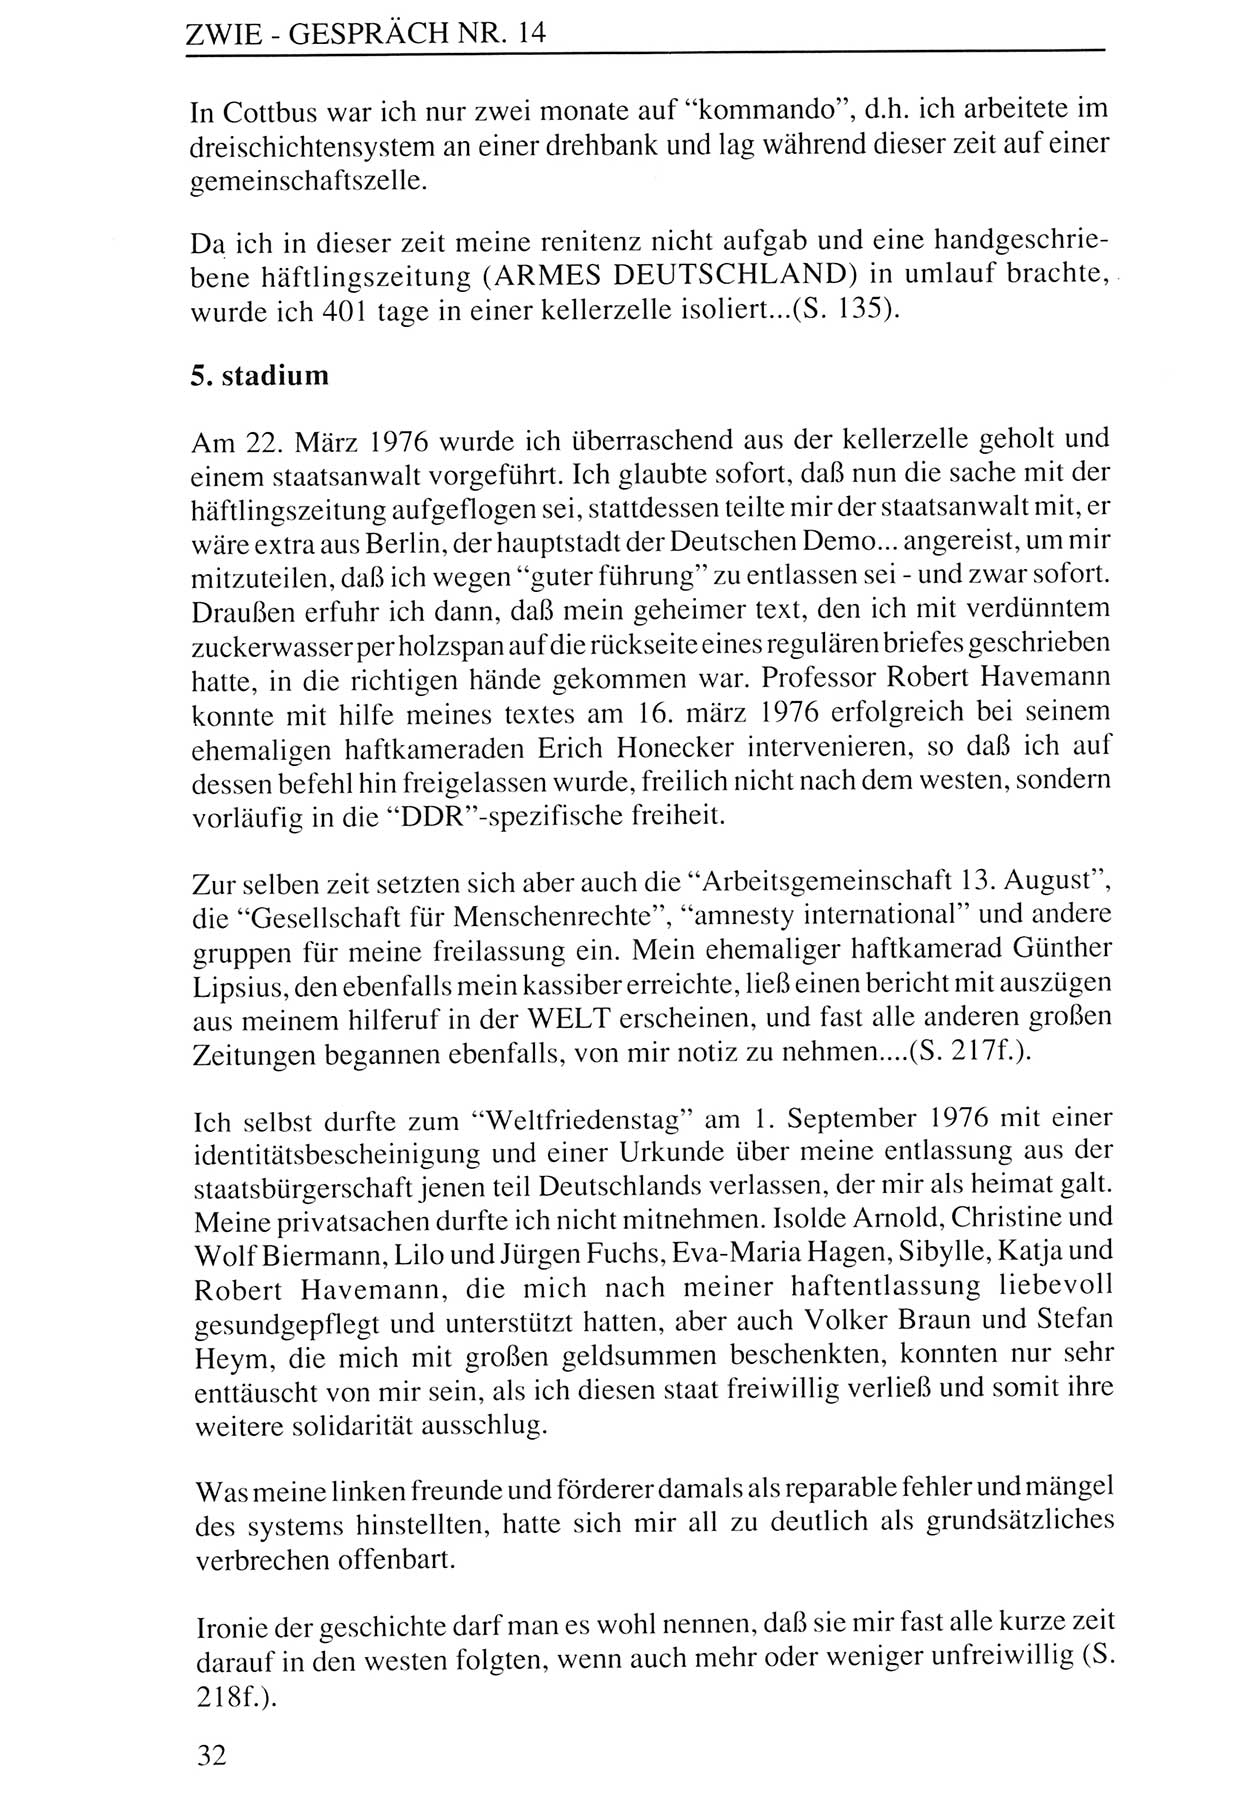 Zwie-Gespräch, Beiträge zur Aufarbeitung der Staatssicherheits-Vergangenheit [Deutsche Demokratische Republik (DDR)], Ausgabe Nr. 14, Berlin 1993, Seite 32 (Zwie-Gespr. Ausg. 14 1993, S. 32)